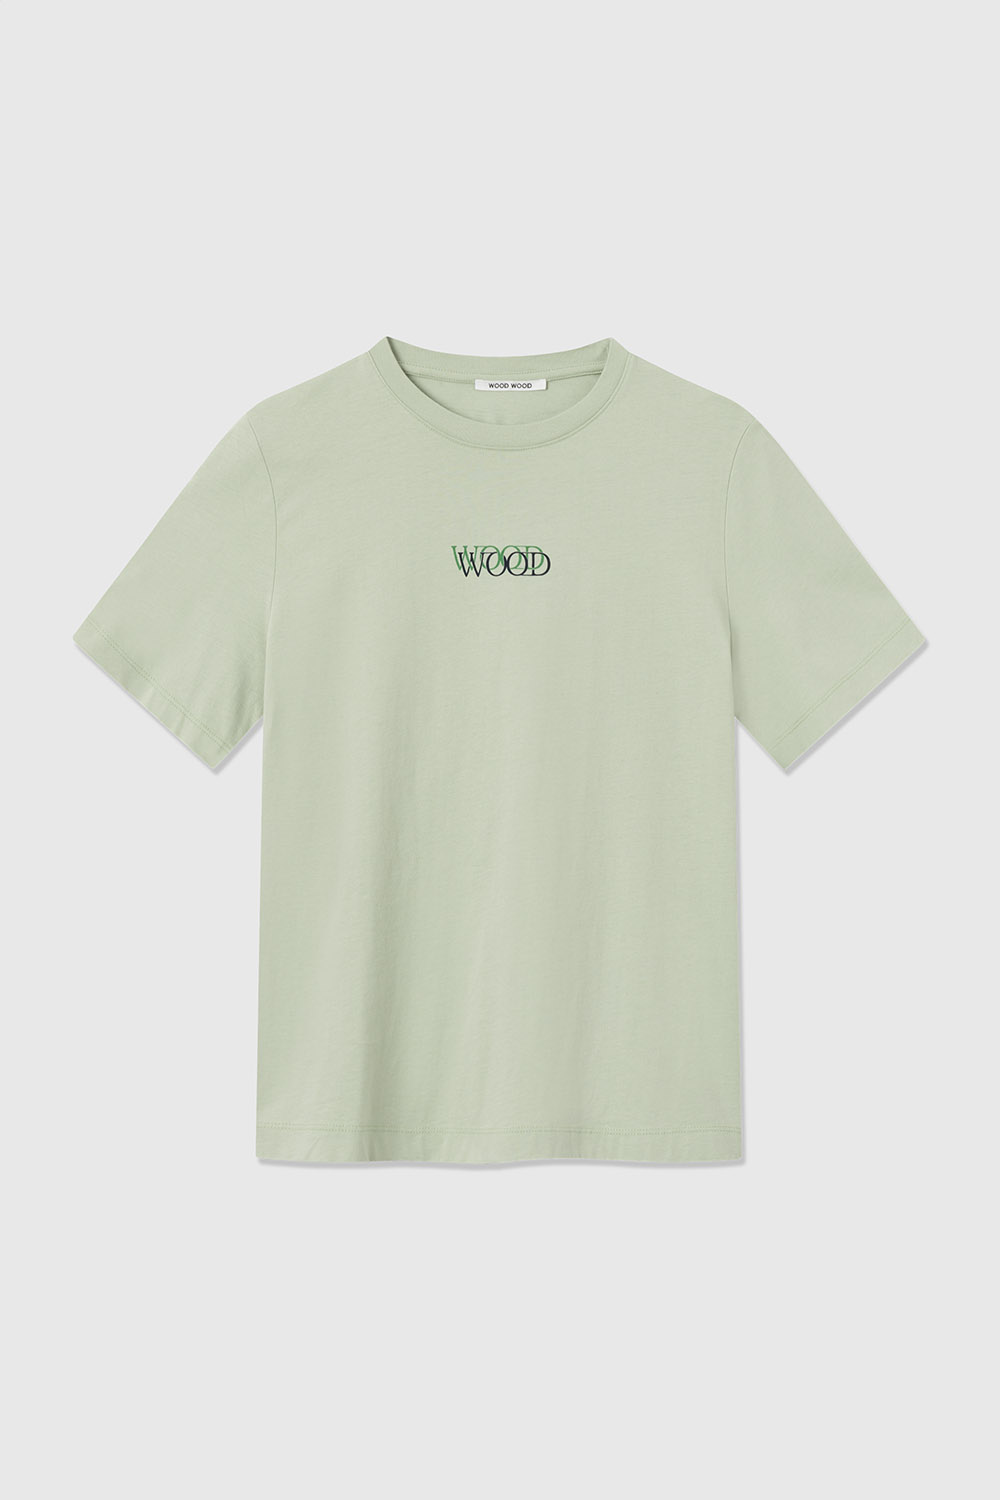 Wood Wood Alma logo T-shirt Light green | WoodWood.com